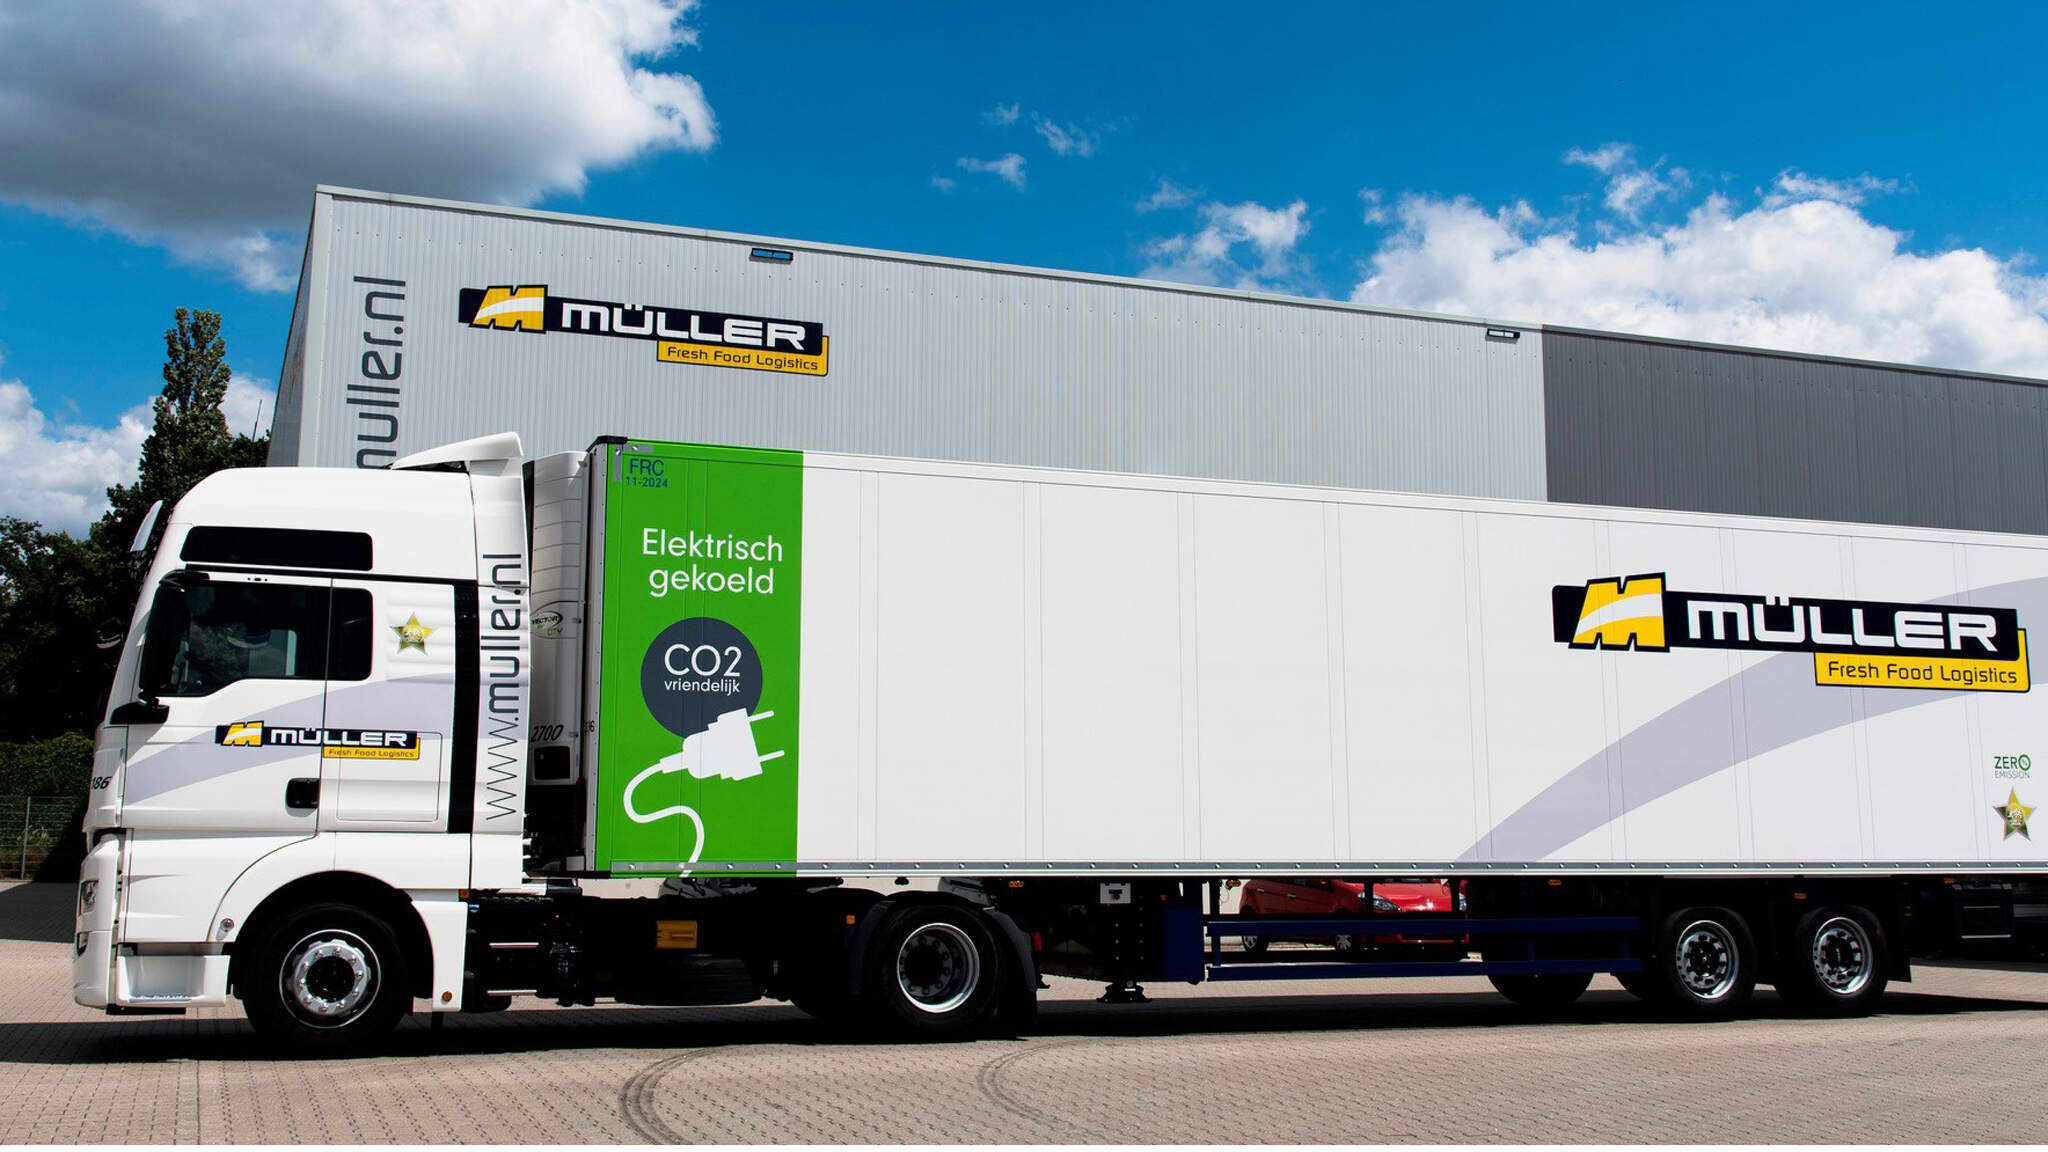 DACHSER achiziționează Müller, furnizorul neerlandez de logistică alimentară